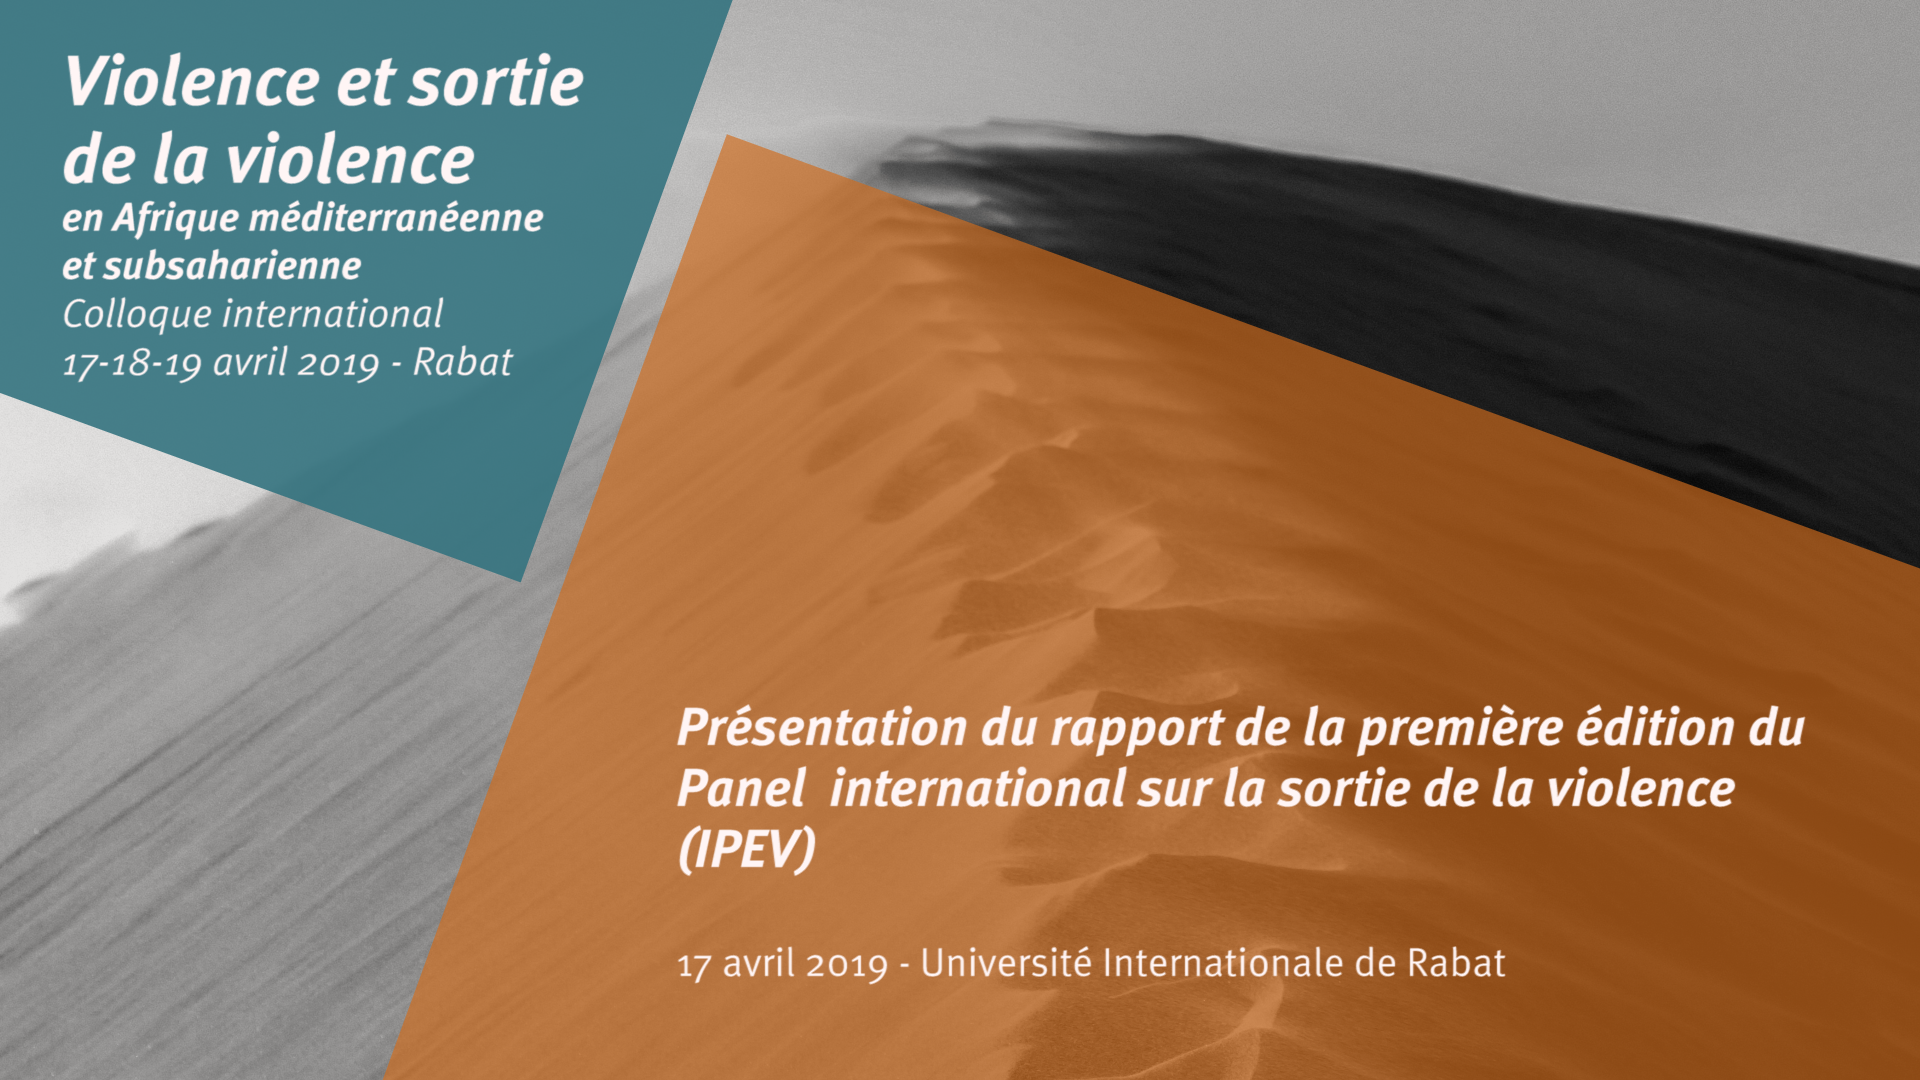 Introduction et présentation du rapport IPEV 1 - Colloque international Rabat 2019